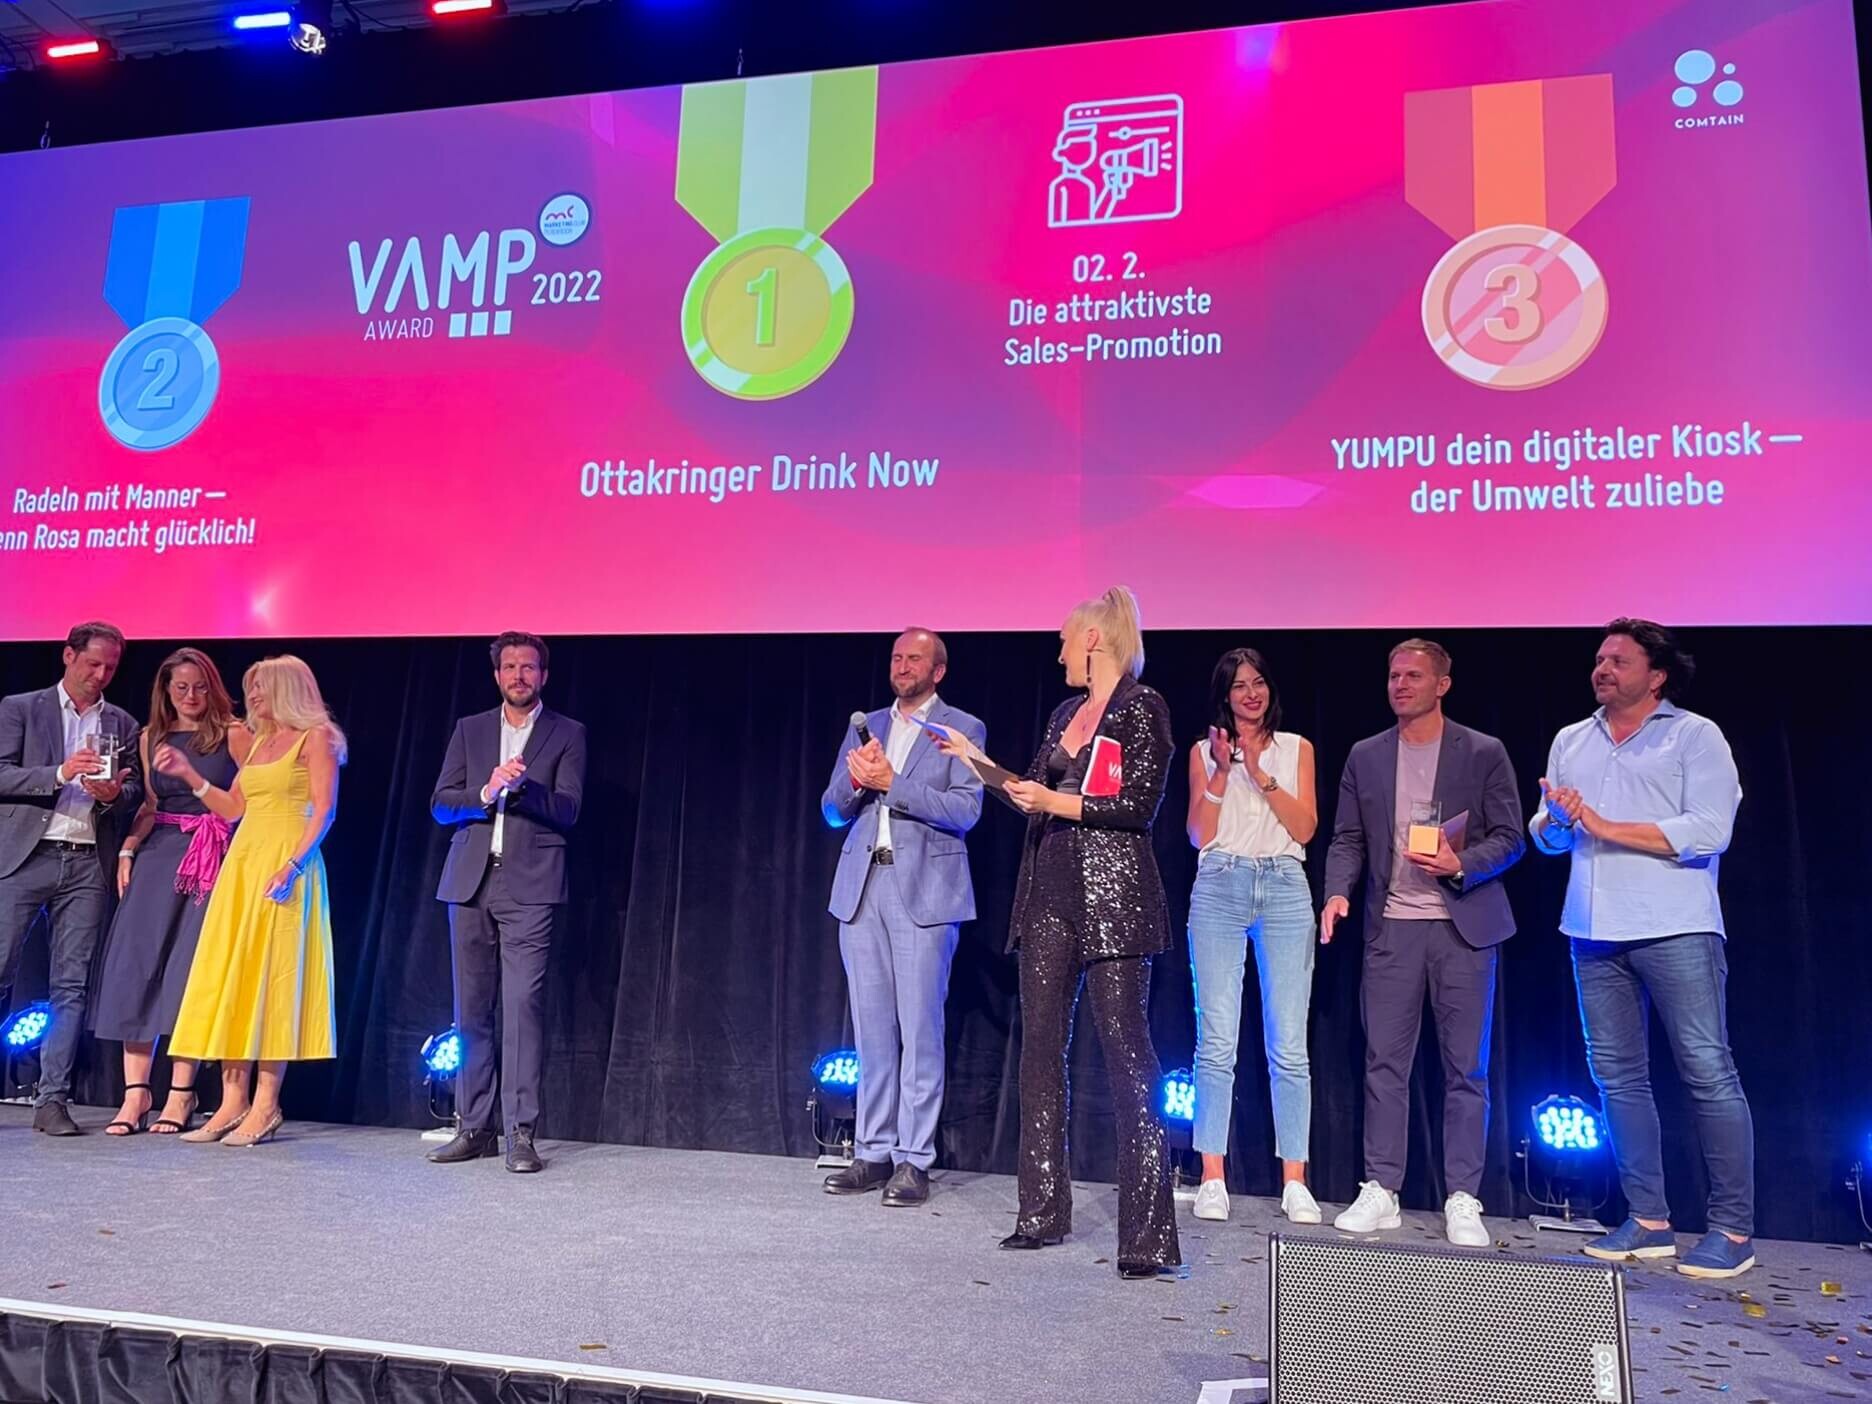 VAMP Award Bühne mit Menschen und Preisverleihung